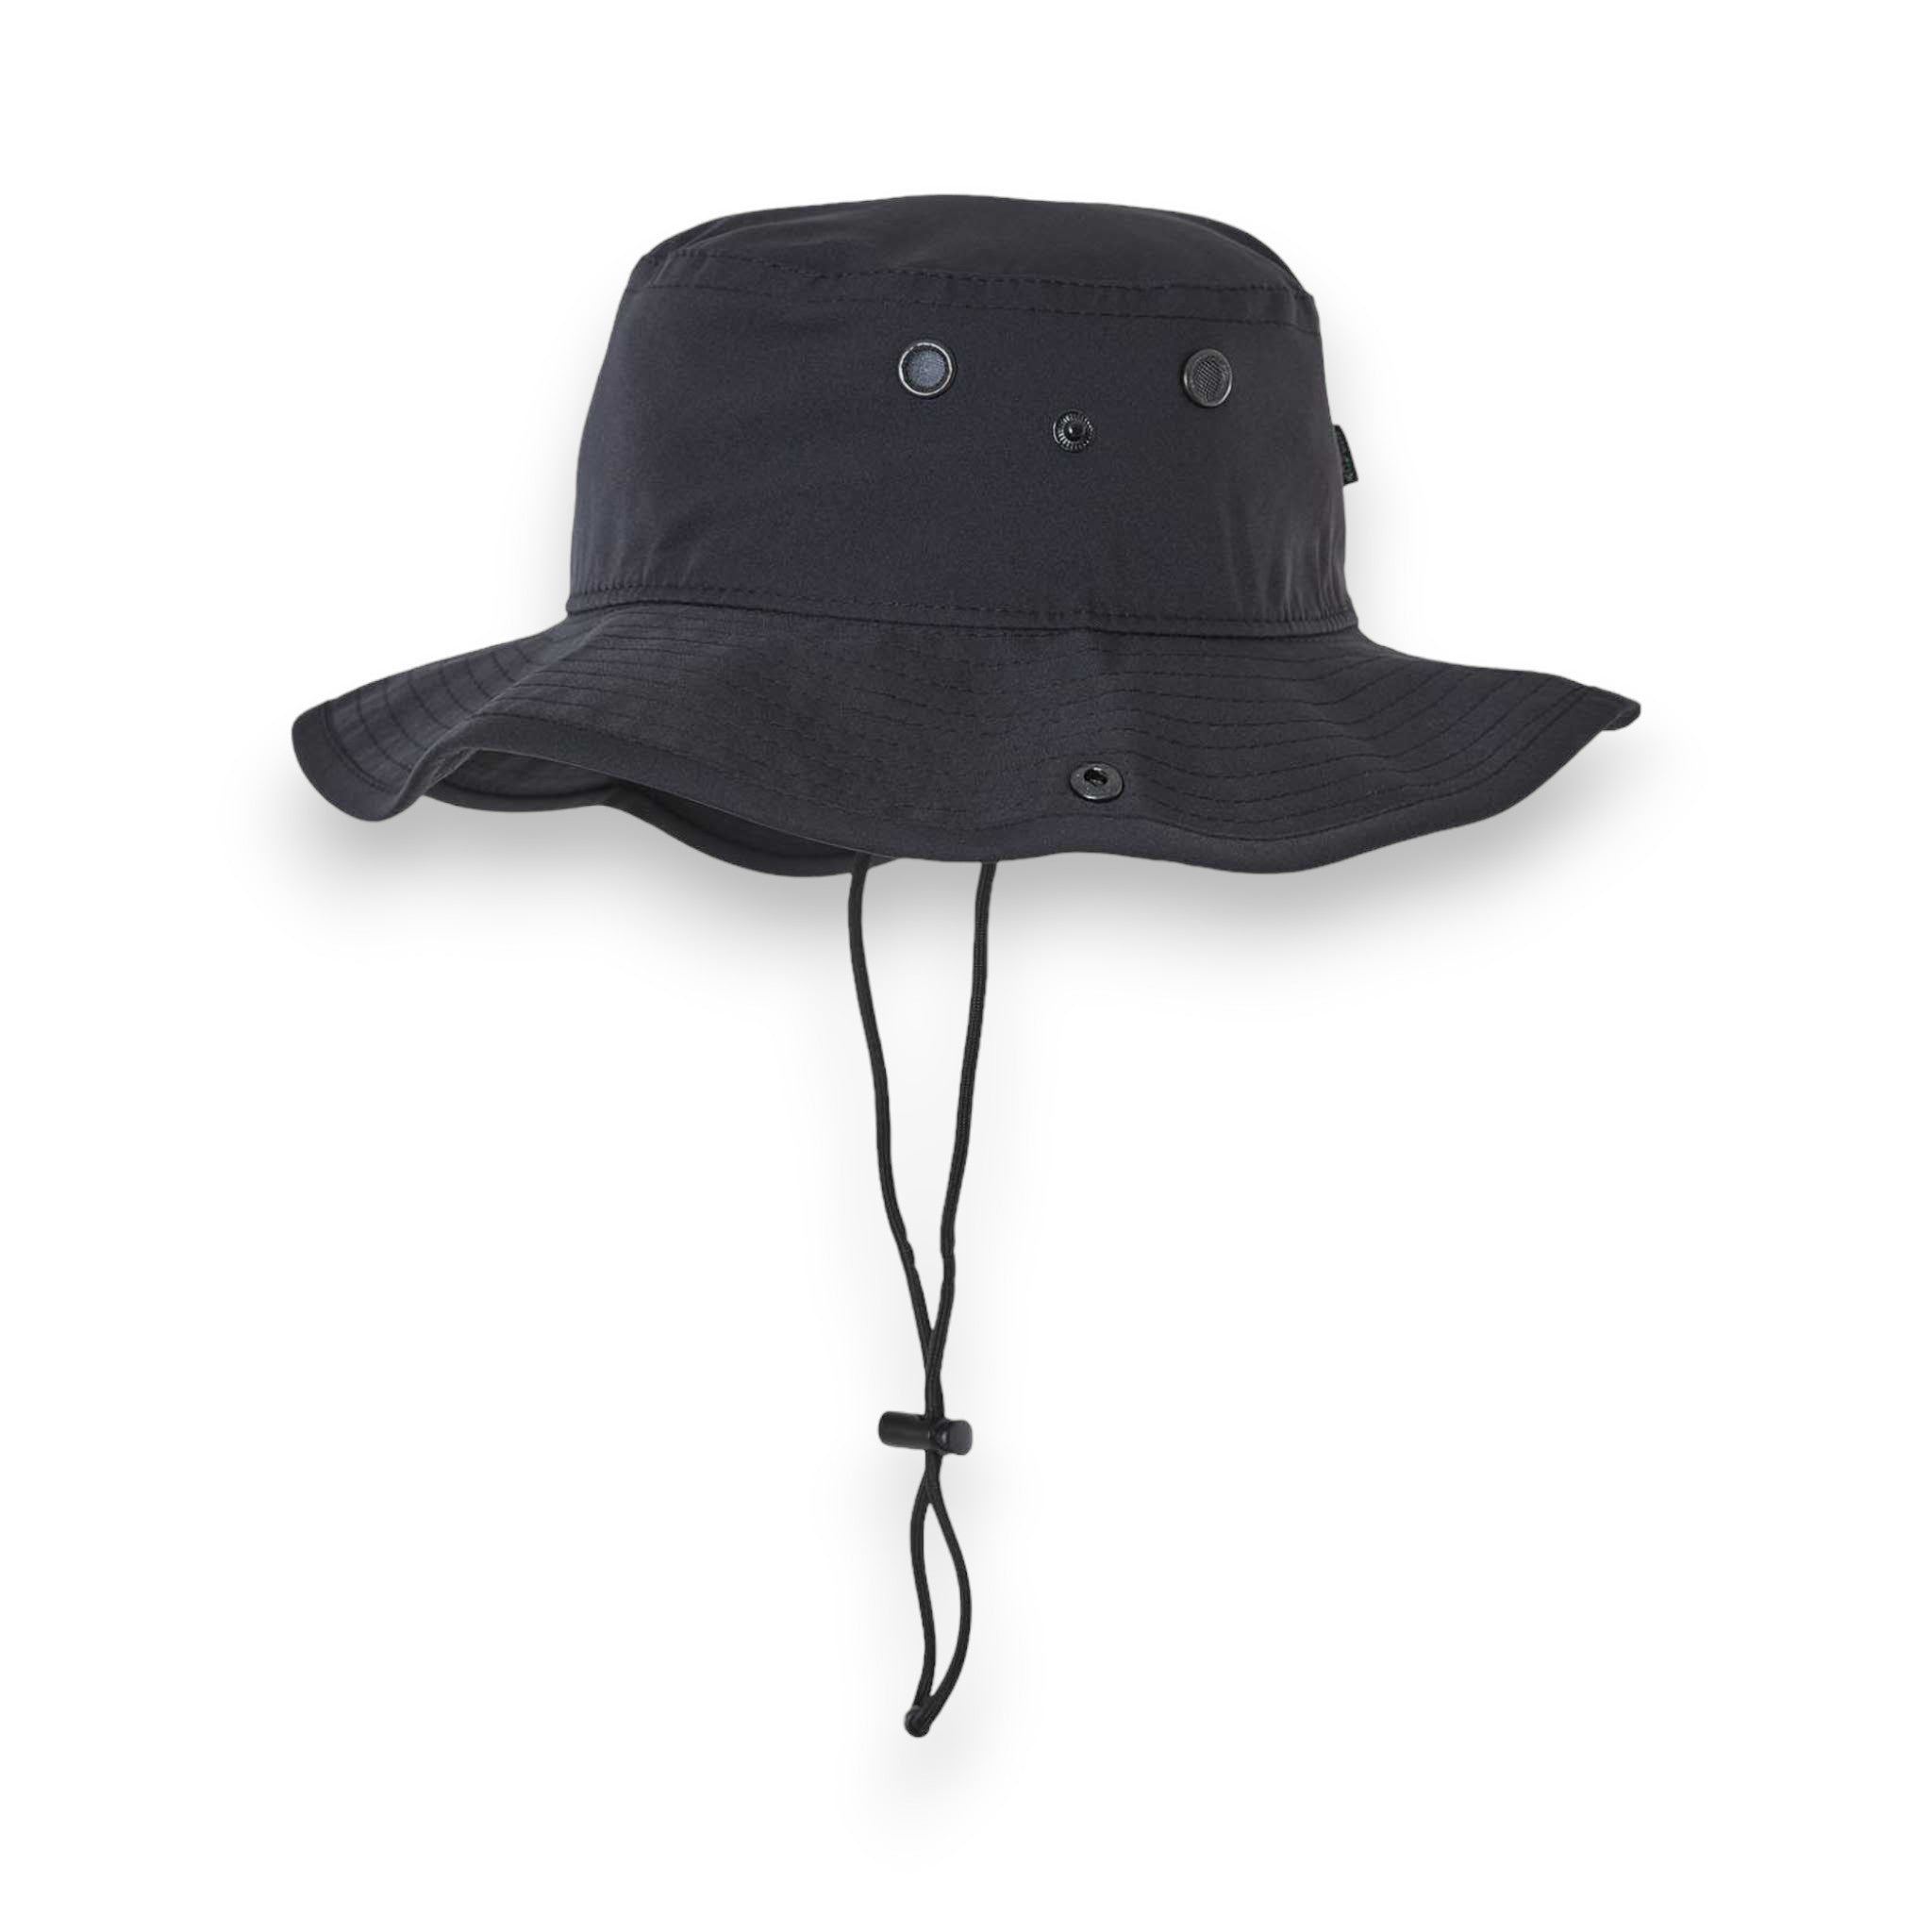 Side view of LEGACY CFB custom hat in black